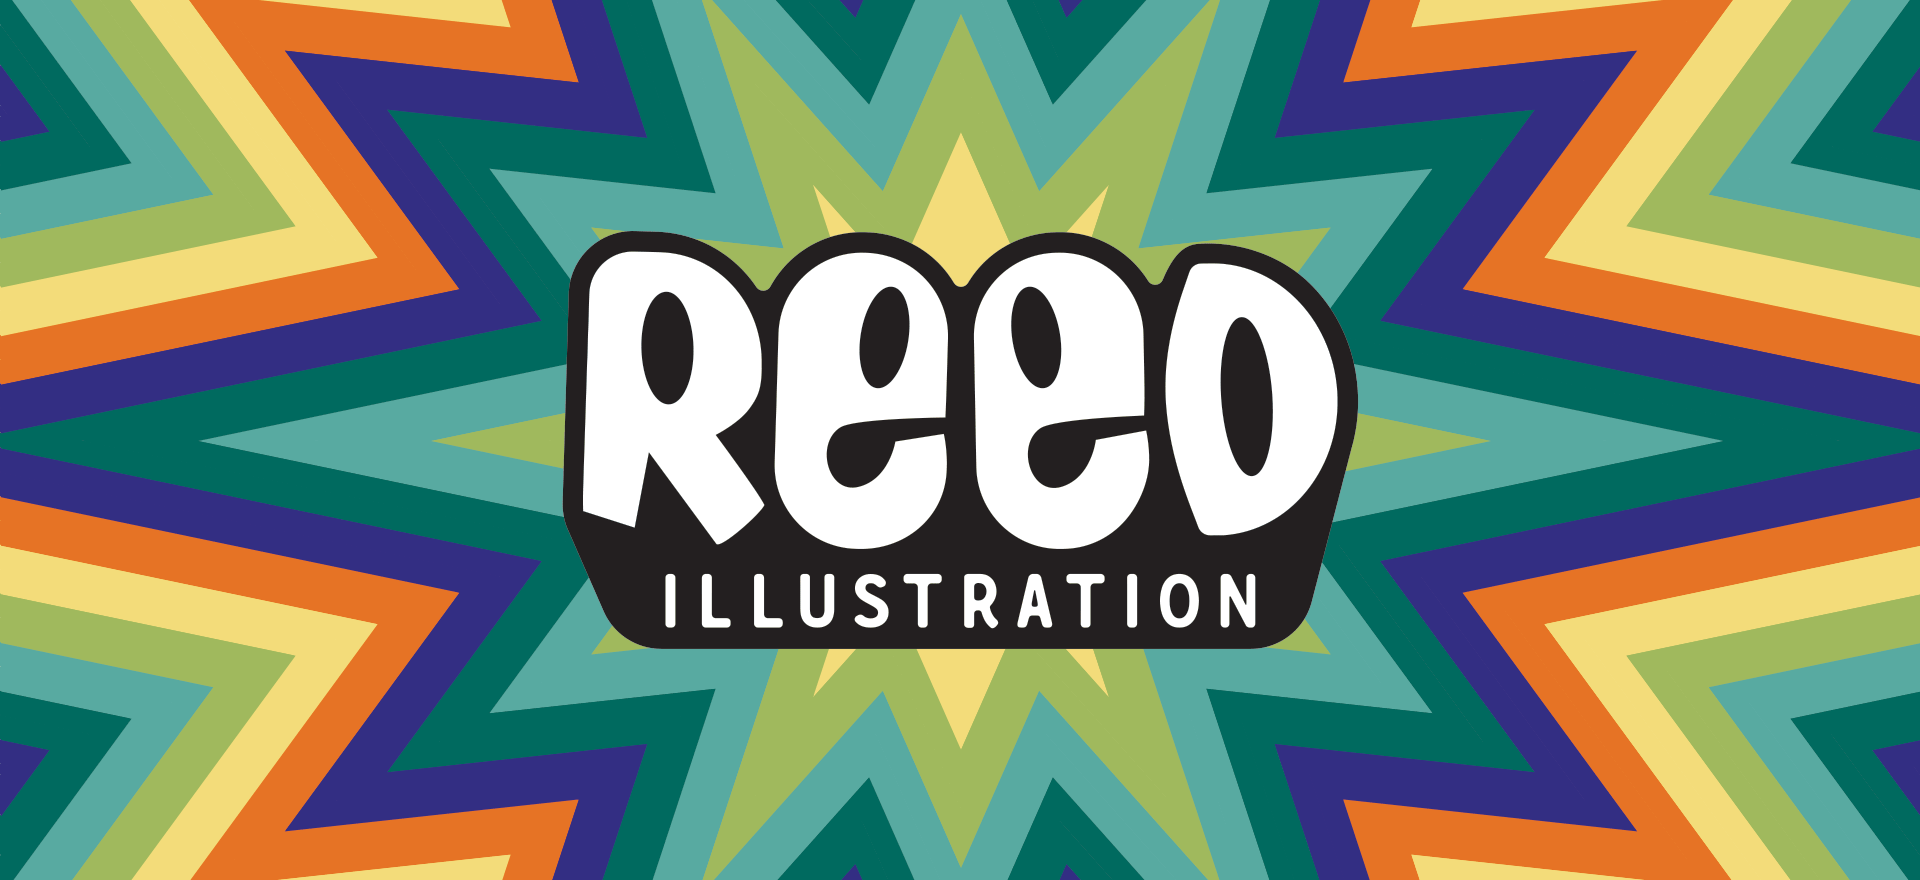 Animated Logo for Reed Illustration animated logo branding design graphic design illustration logo logo